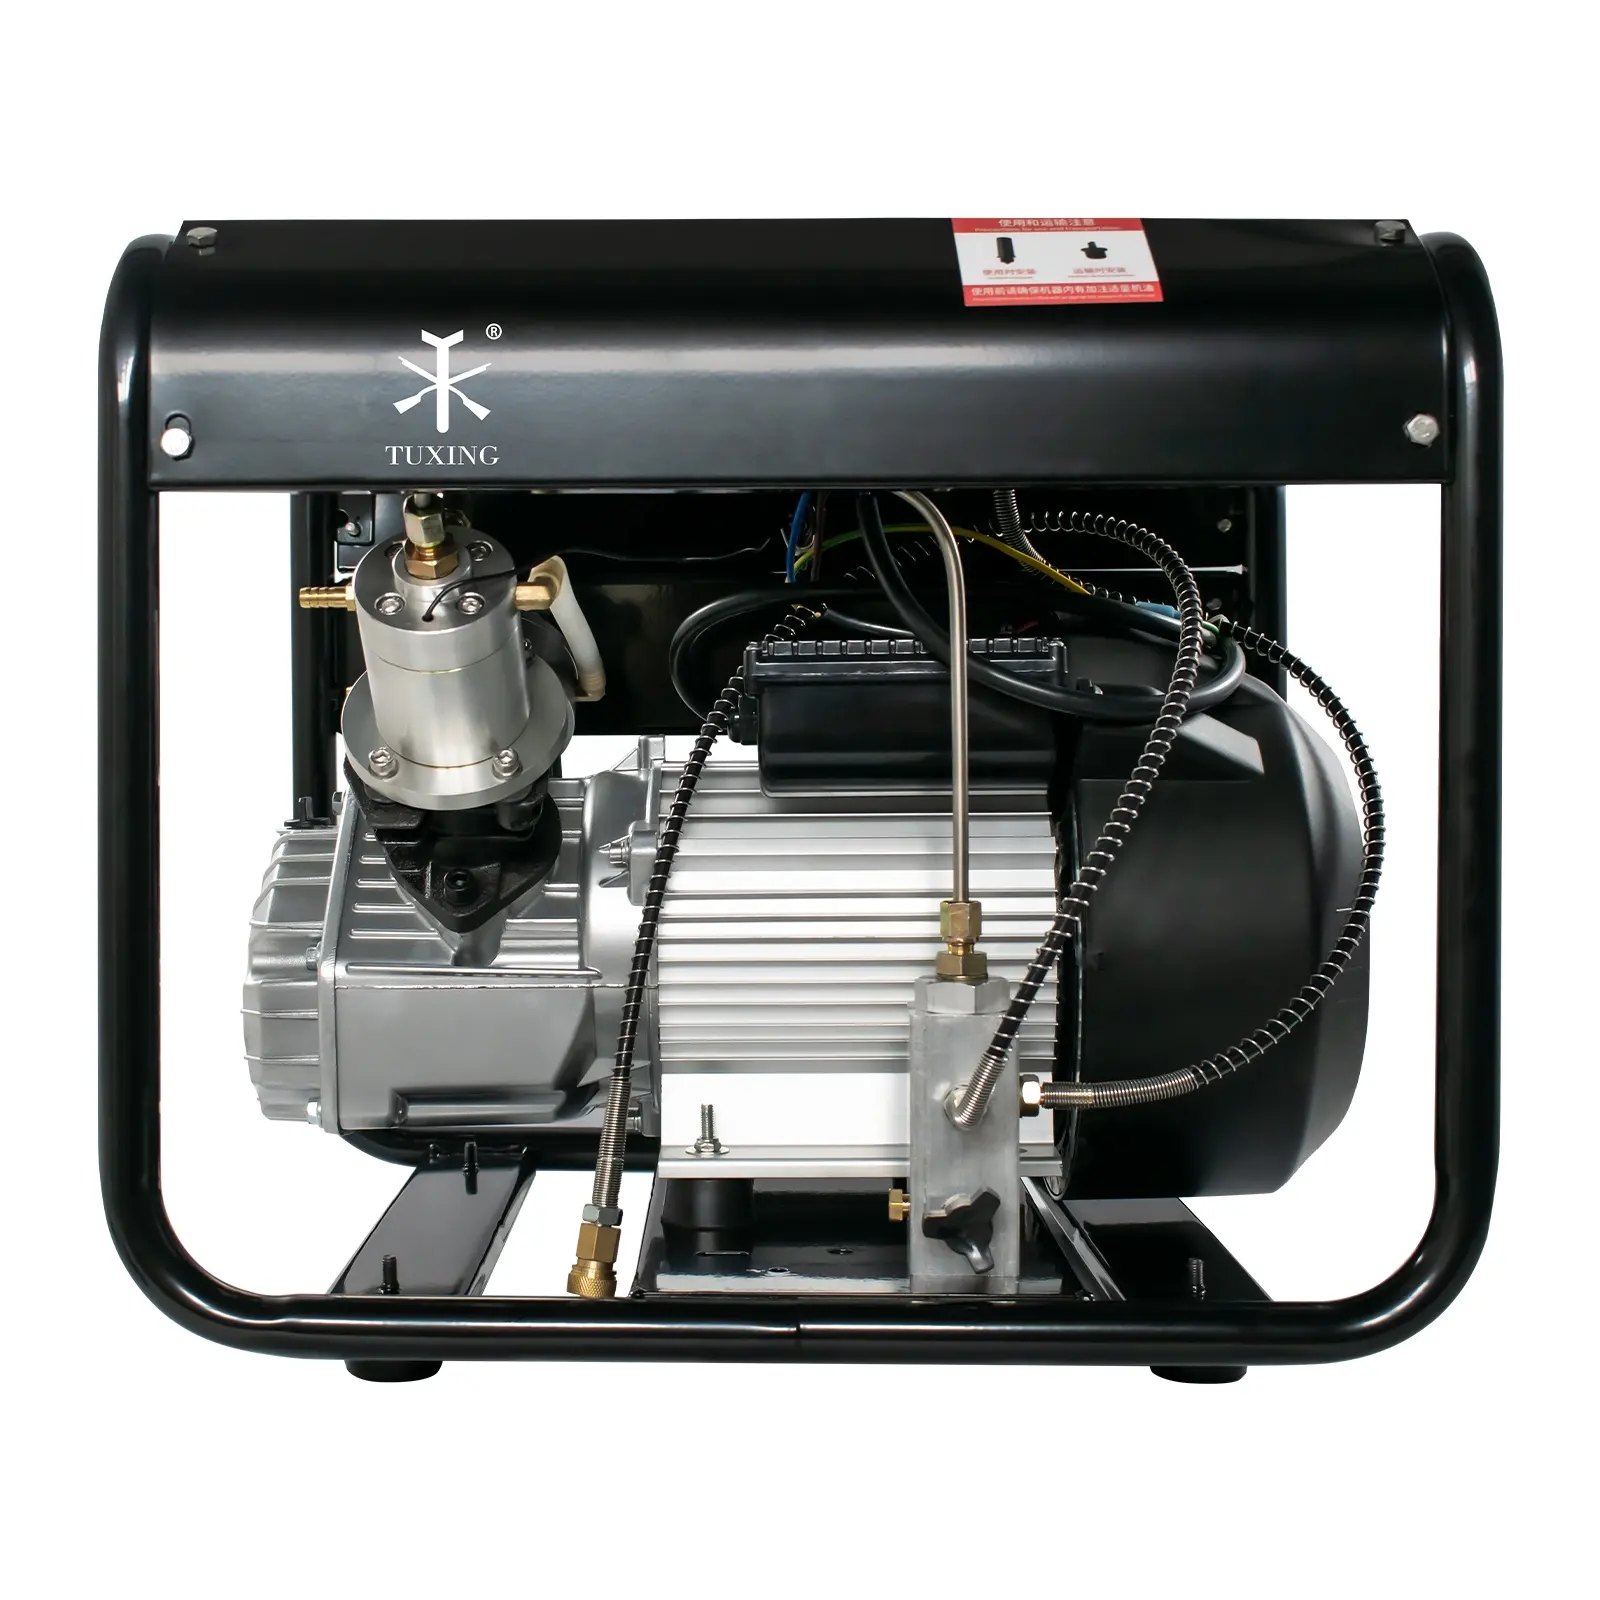 TUXING vente chaude arrêt manuel 30mpa/300bar/4500psi ventilateur de refroidissement électrique Portable Double cylindre PCP Paintball compresseur d'air